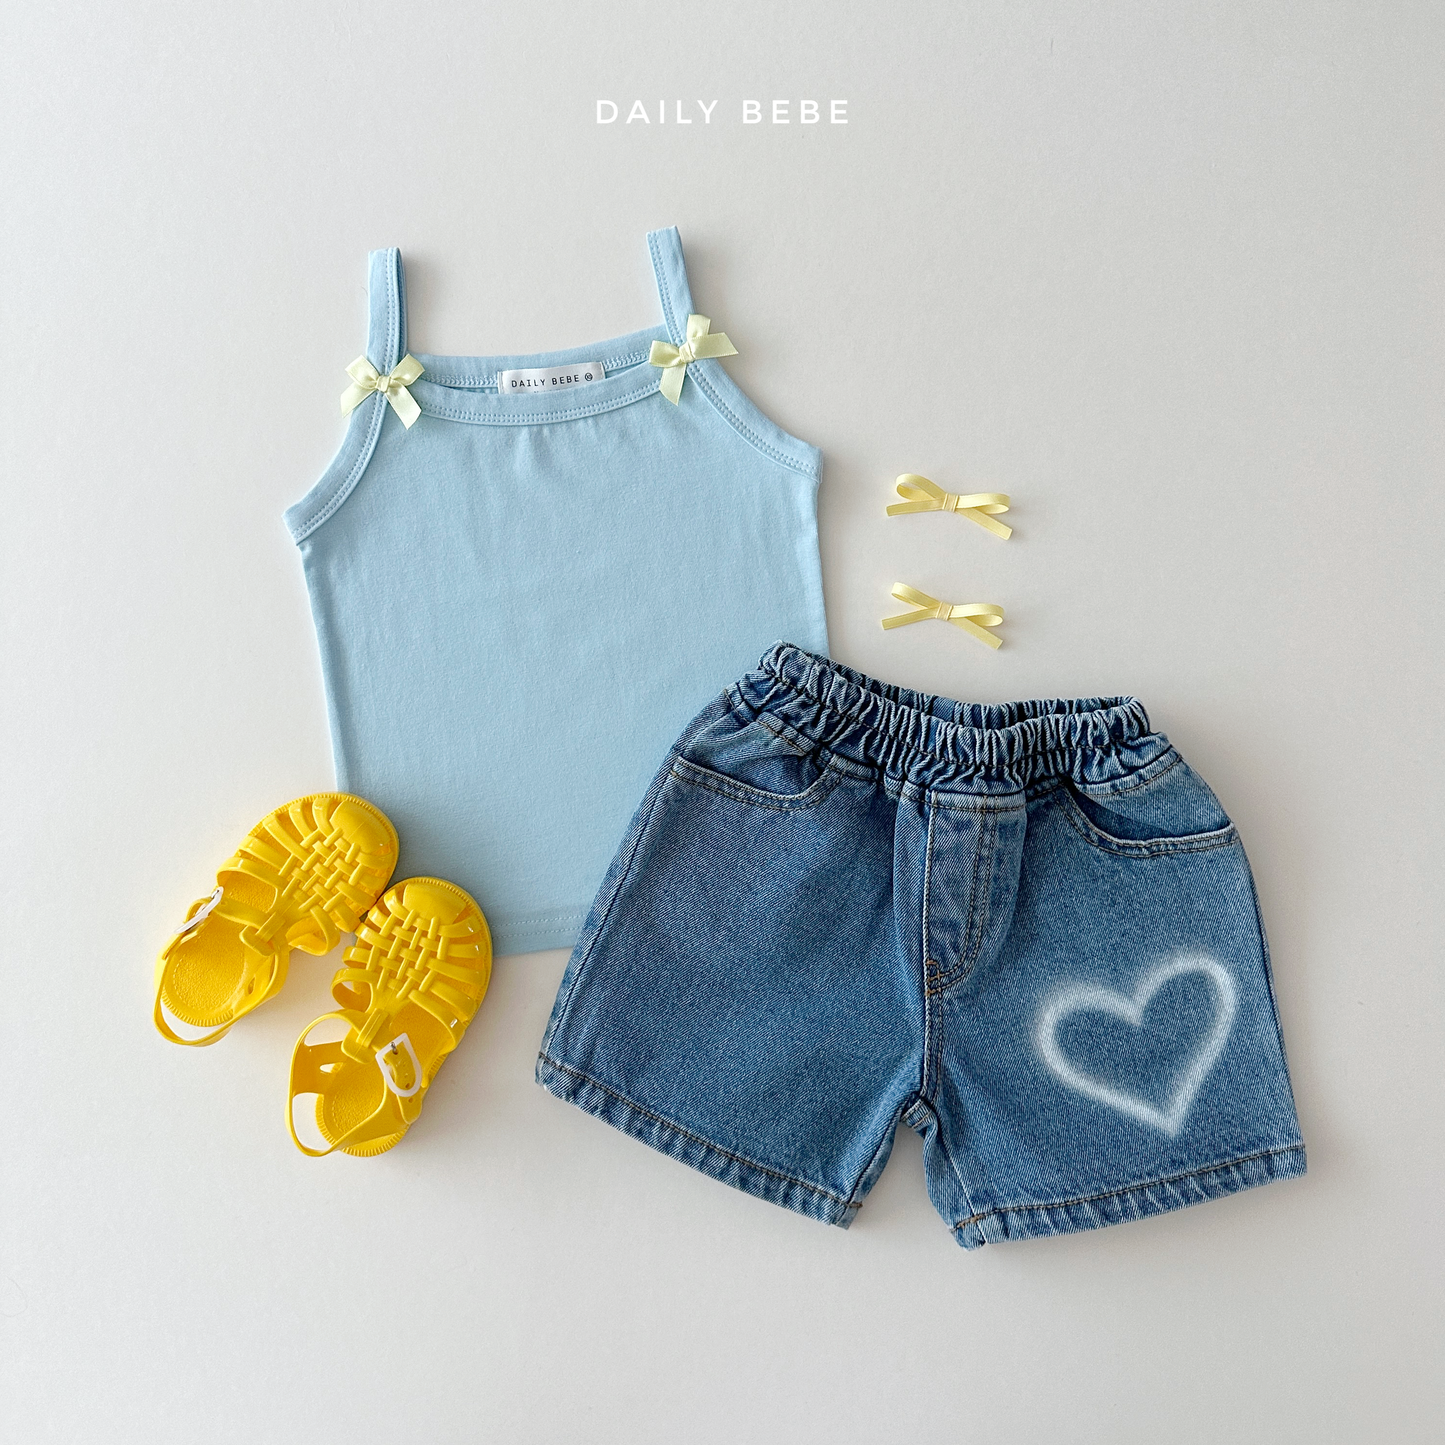 [Daily Bebe] Summer Denim Shorts